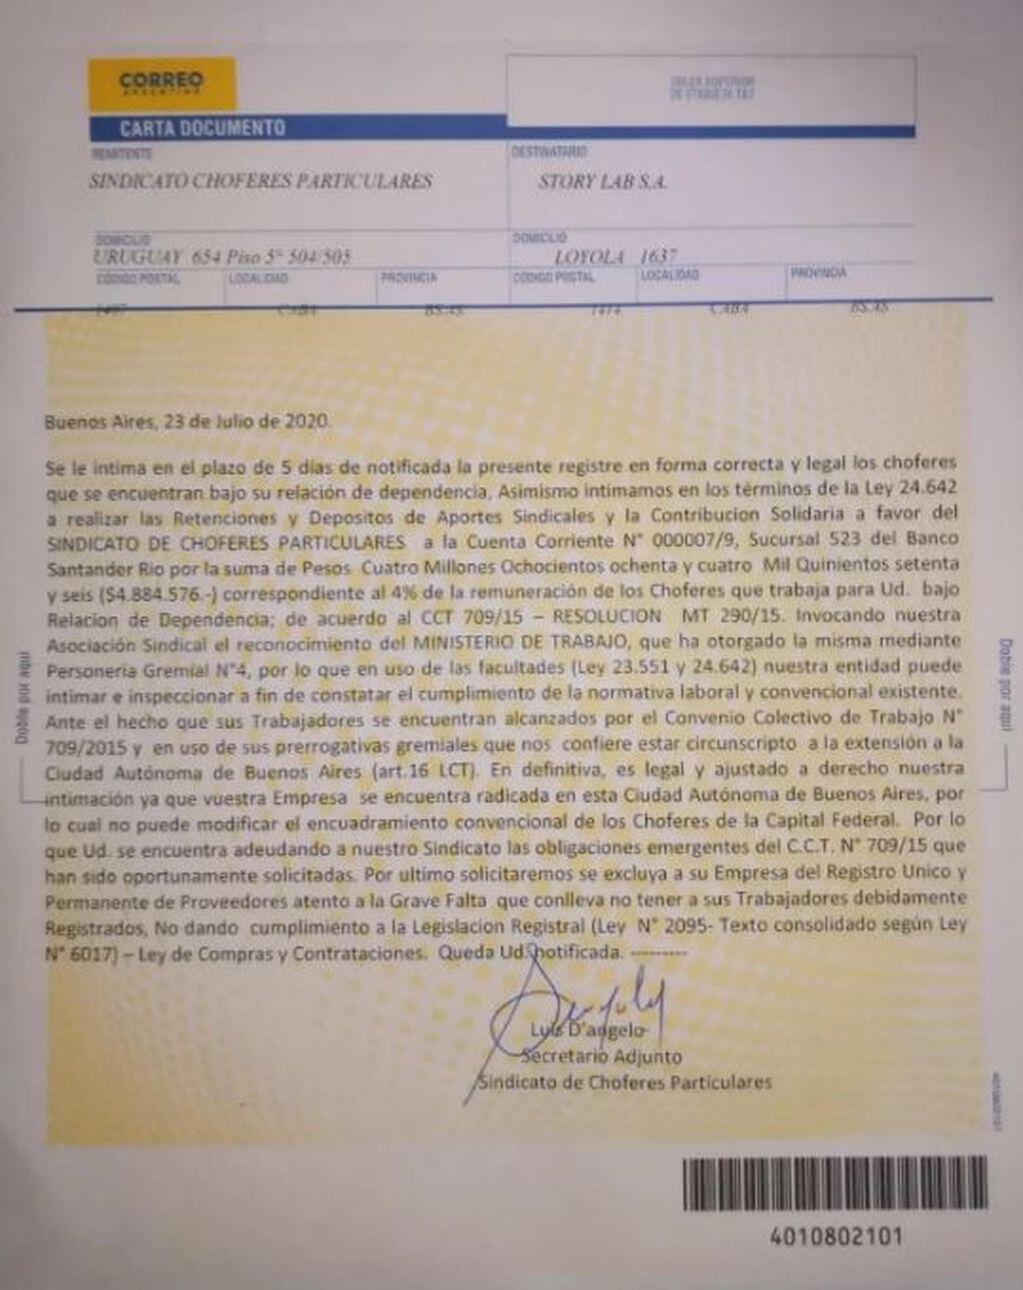 Carta documento contra StoryLab, la productora de Nacho Viale, el nieto de Mirtha Legrand.